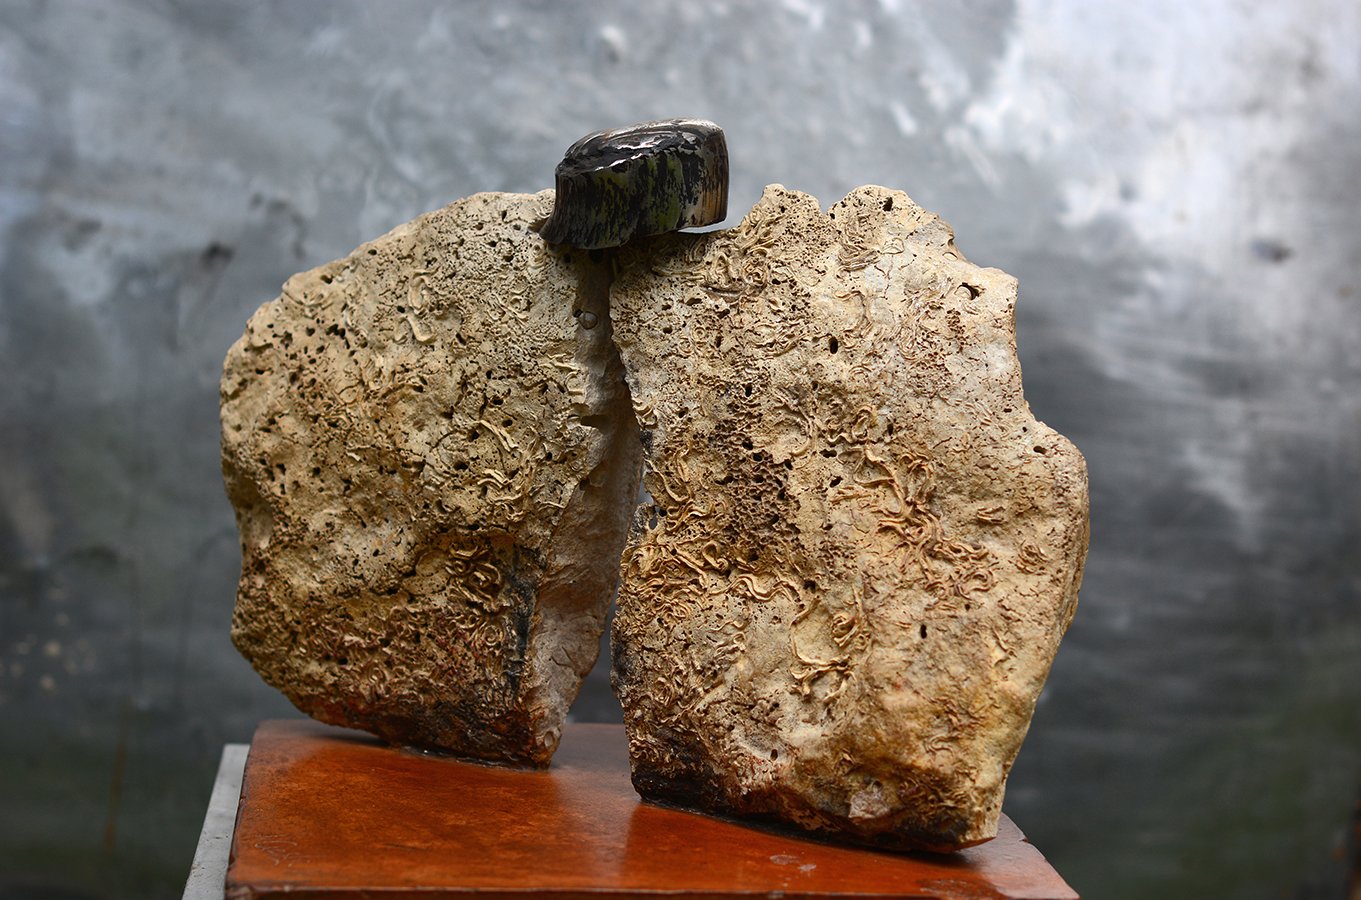 Poussière de pierre 1991  310x330x330 acier inox forgé,calcaire des sables d'Olonne, socle terre cuite